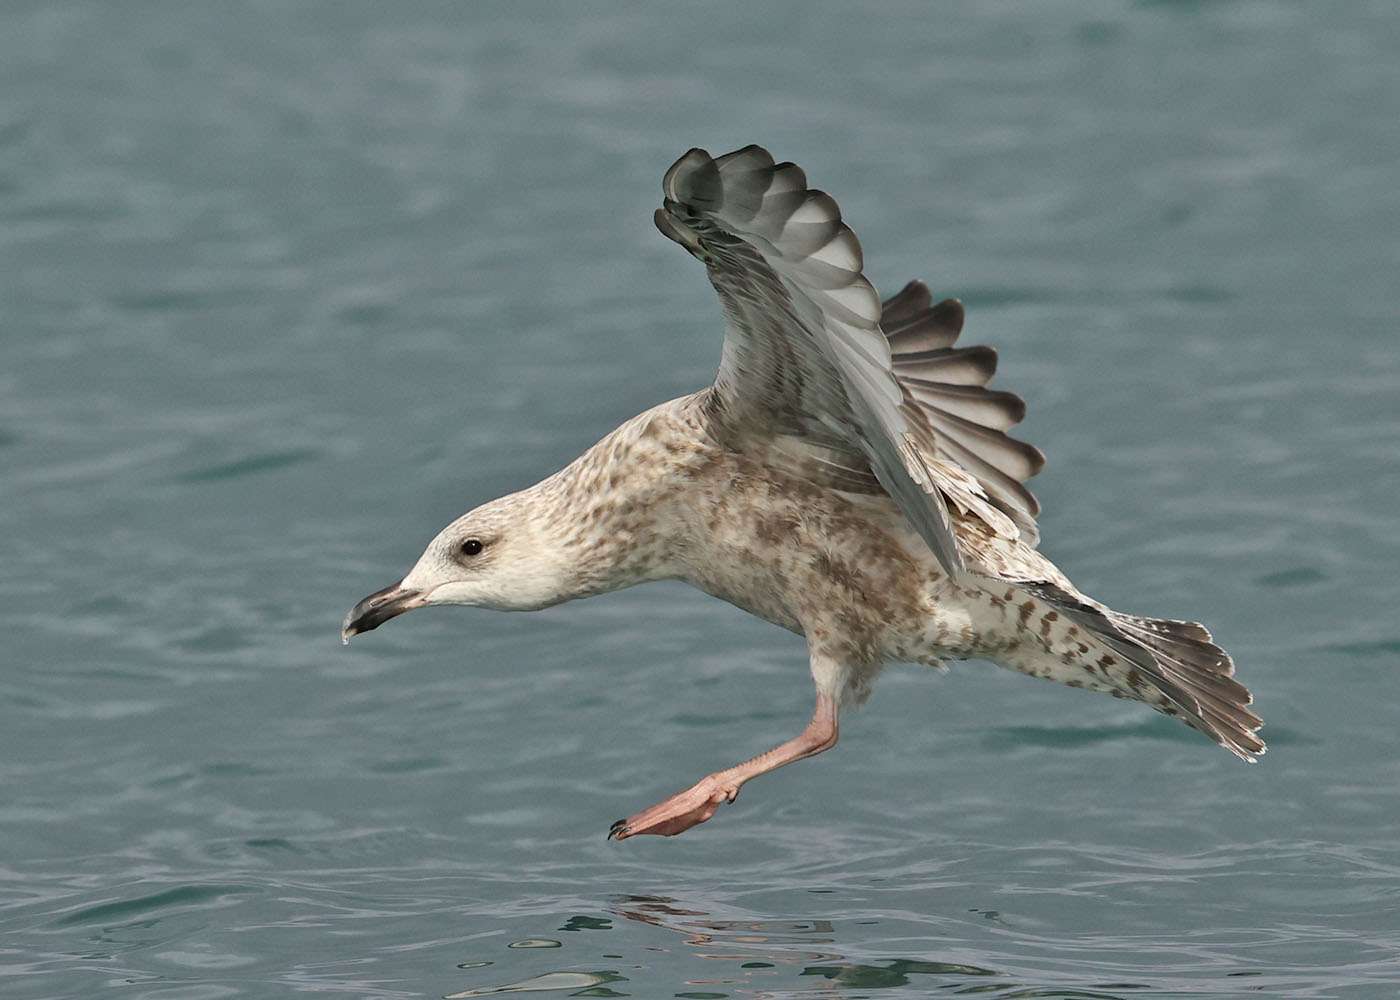 Herring Gull by Steve Hopper at Torbay